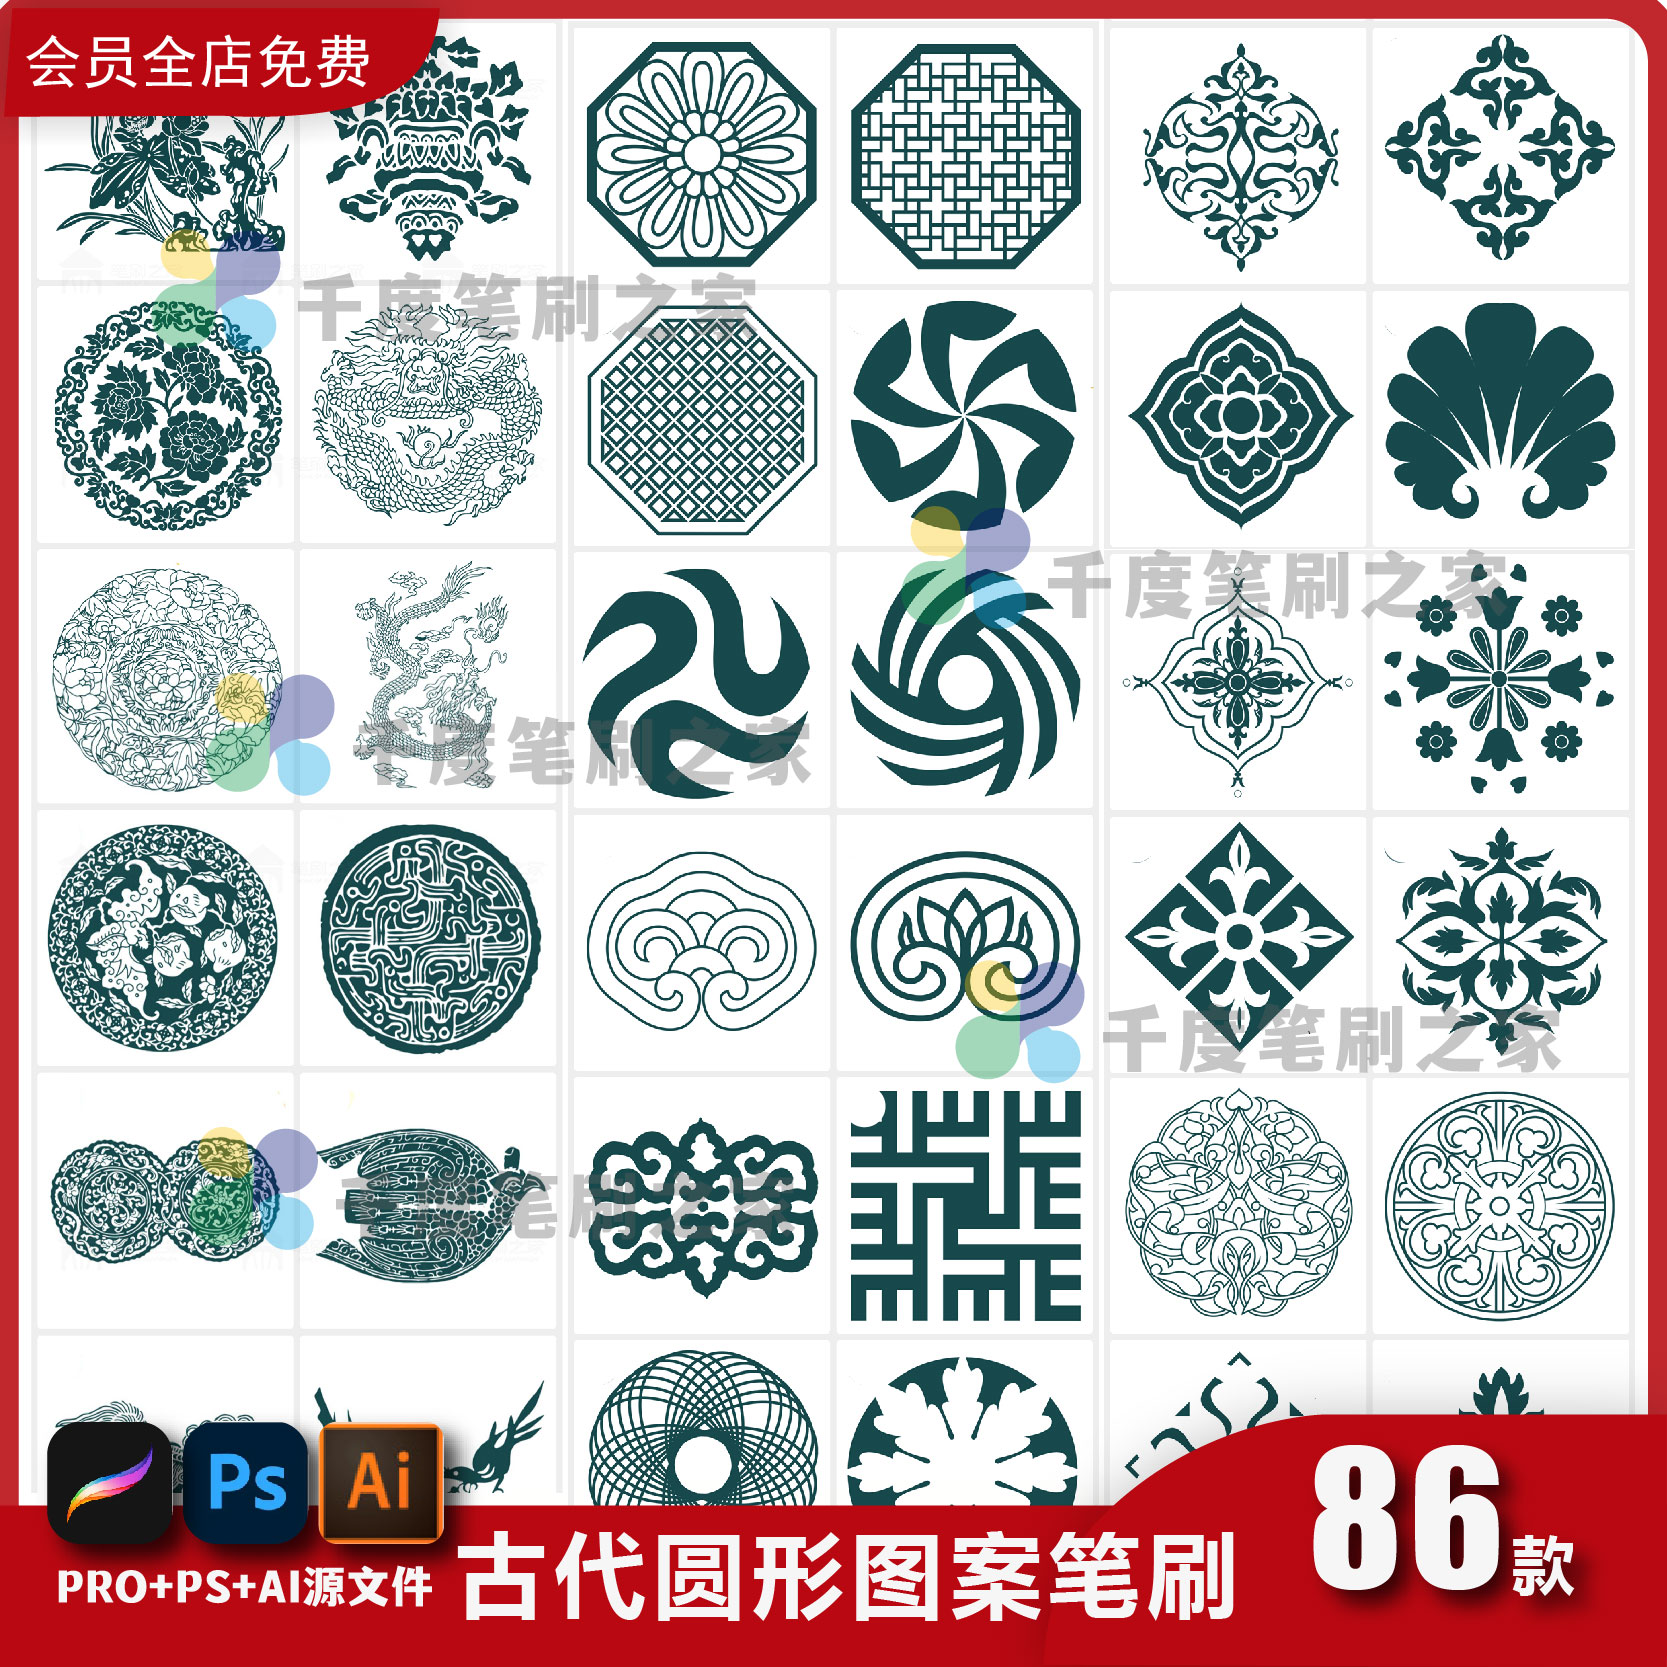 procreate笔刷ps圆形古典图案元素ai矢量图中国古代纹样ipad绘画